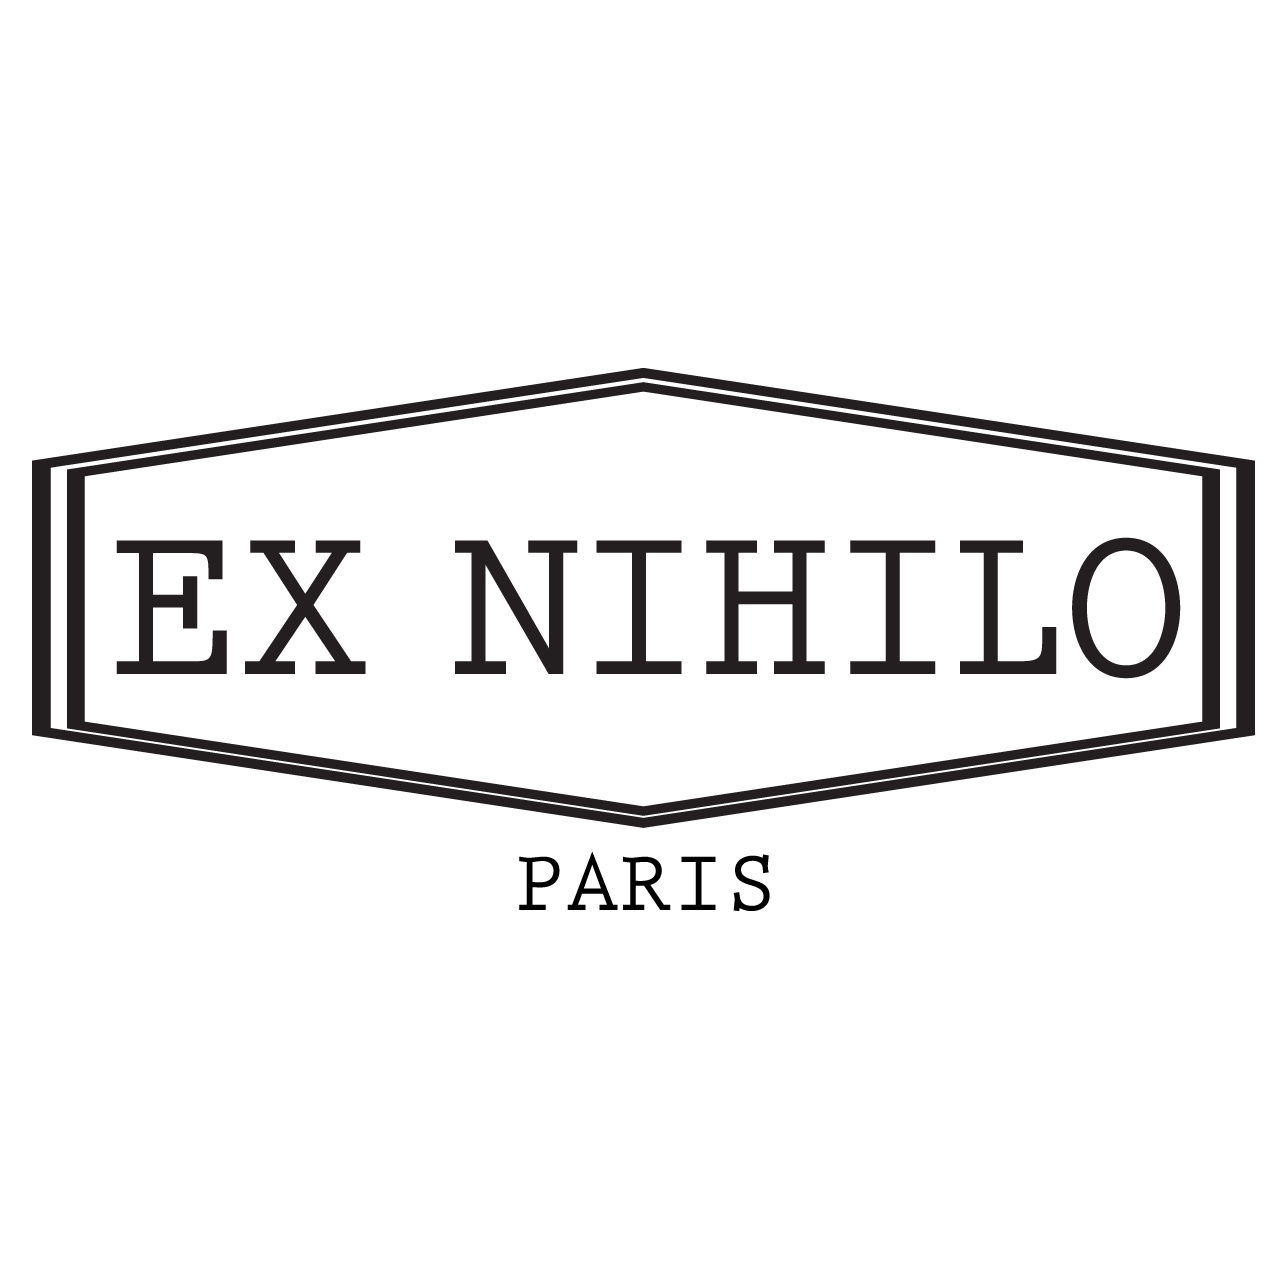 Ex Nihilo